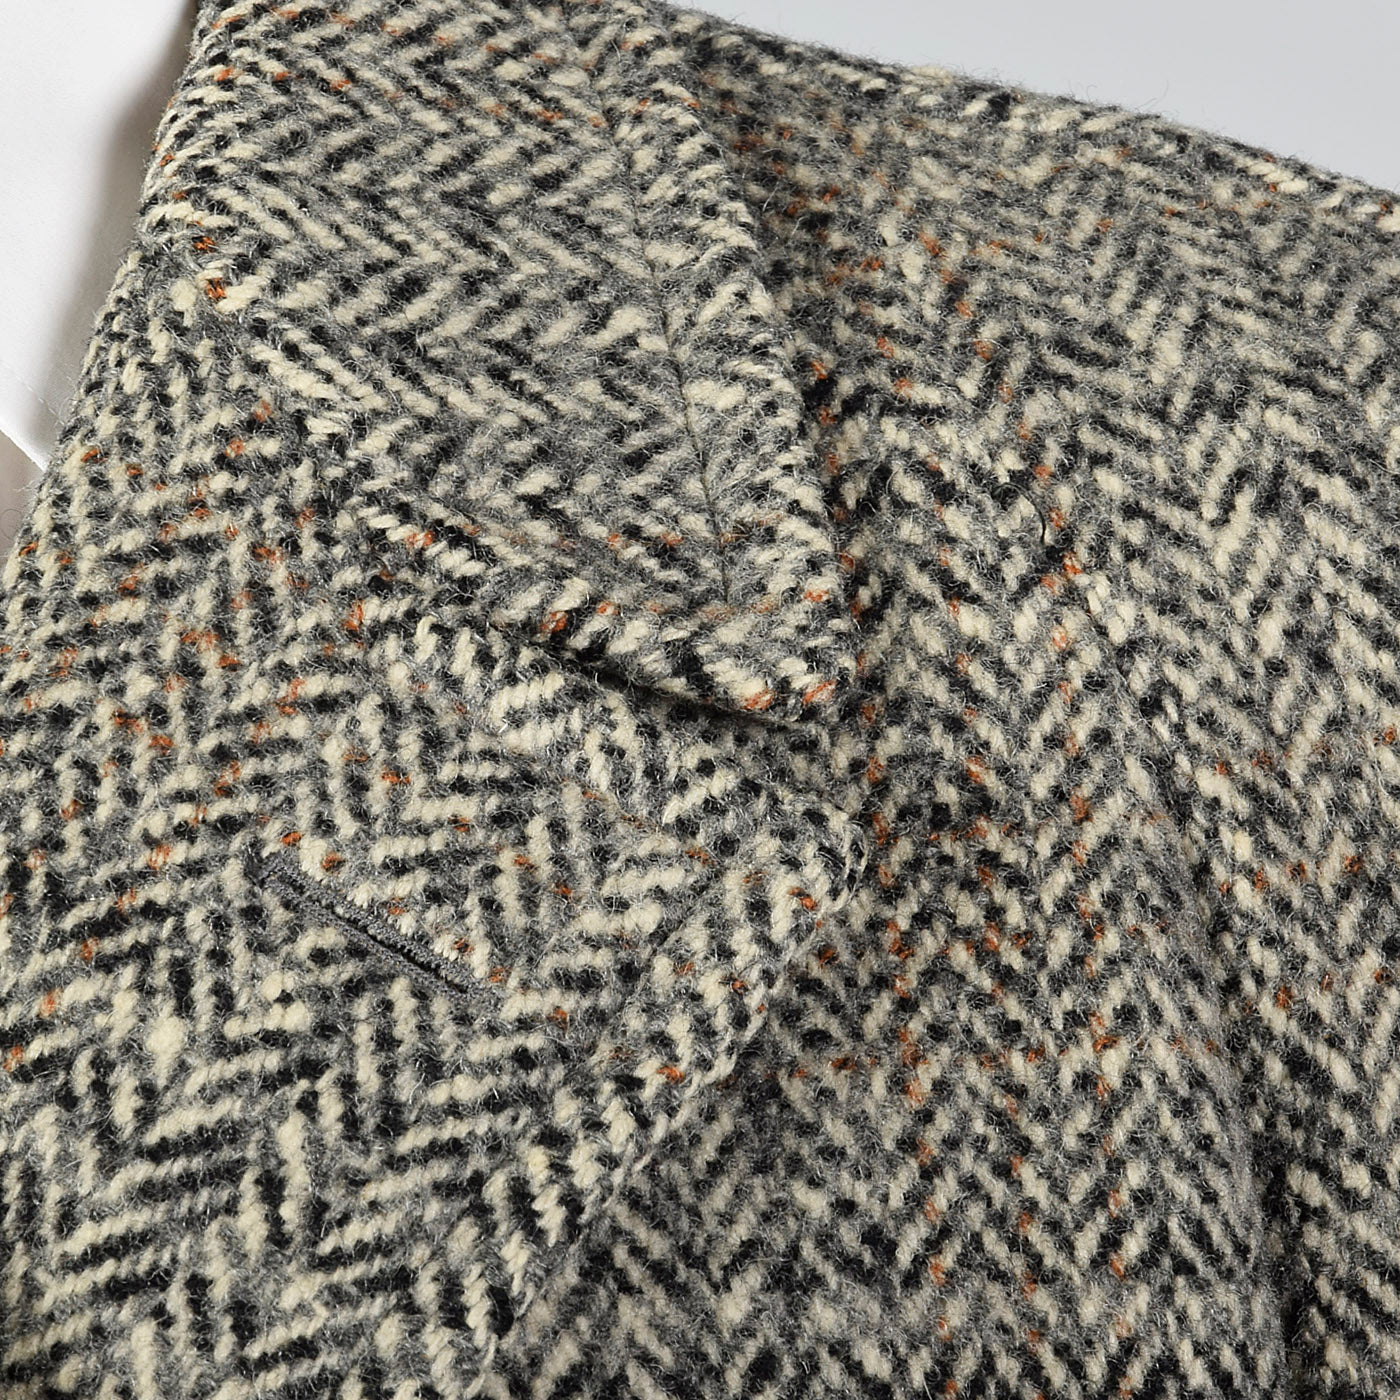 1950s Mens Wool Tweed Frankfurt Coat